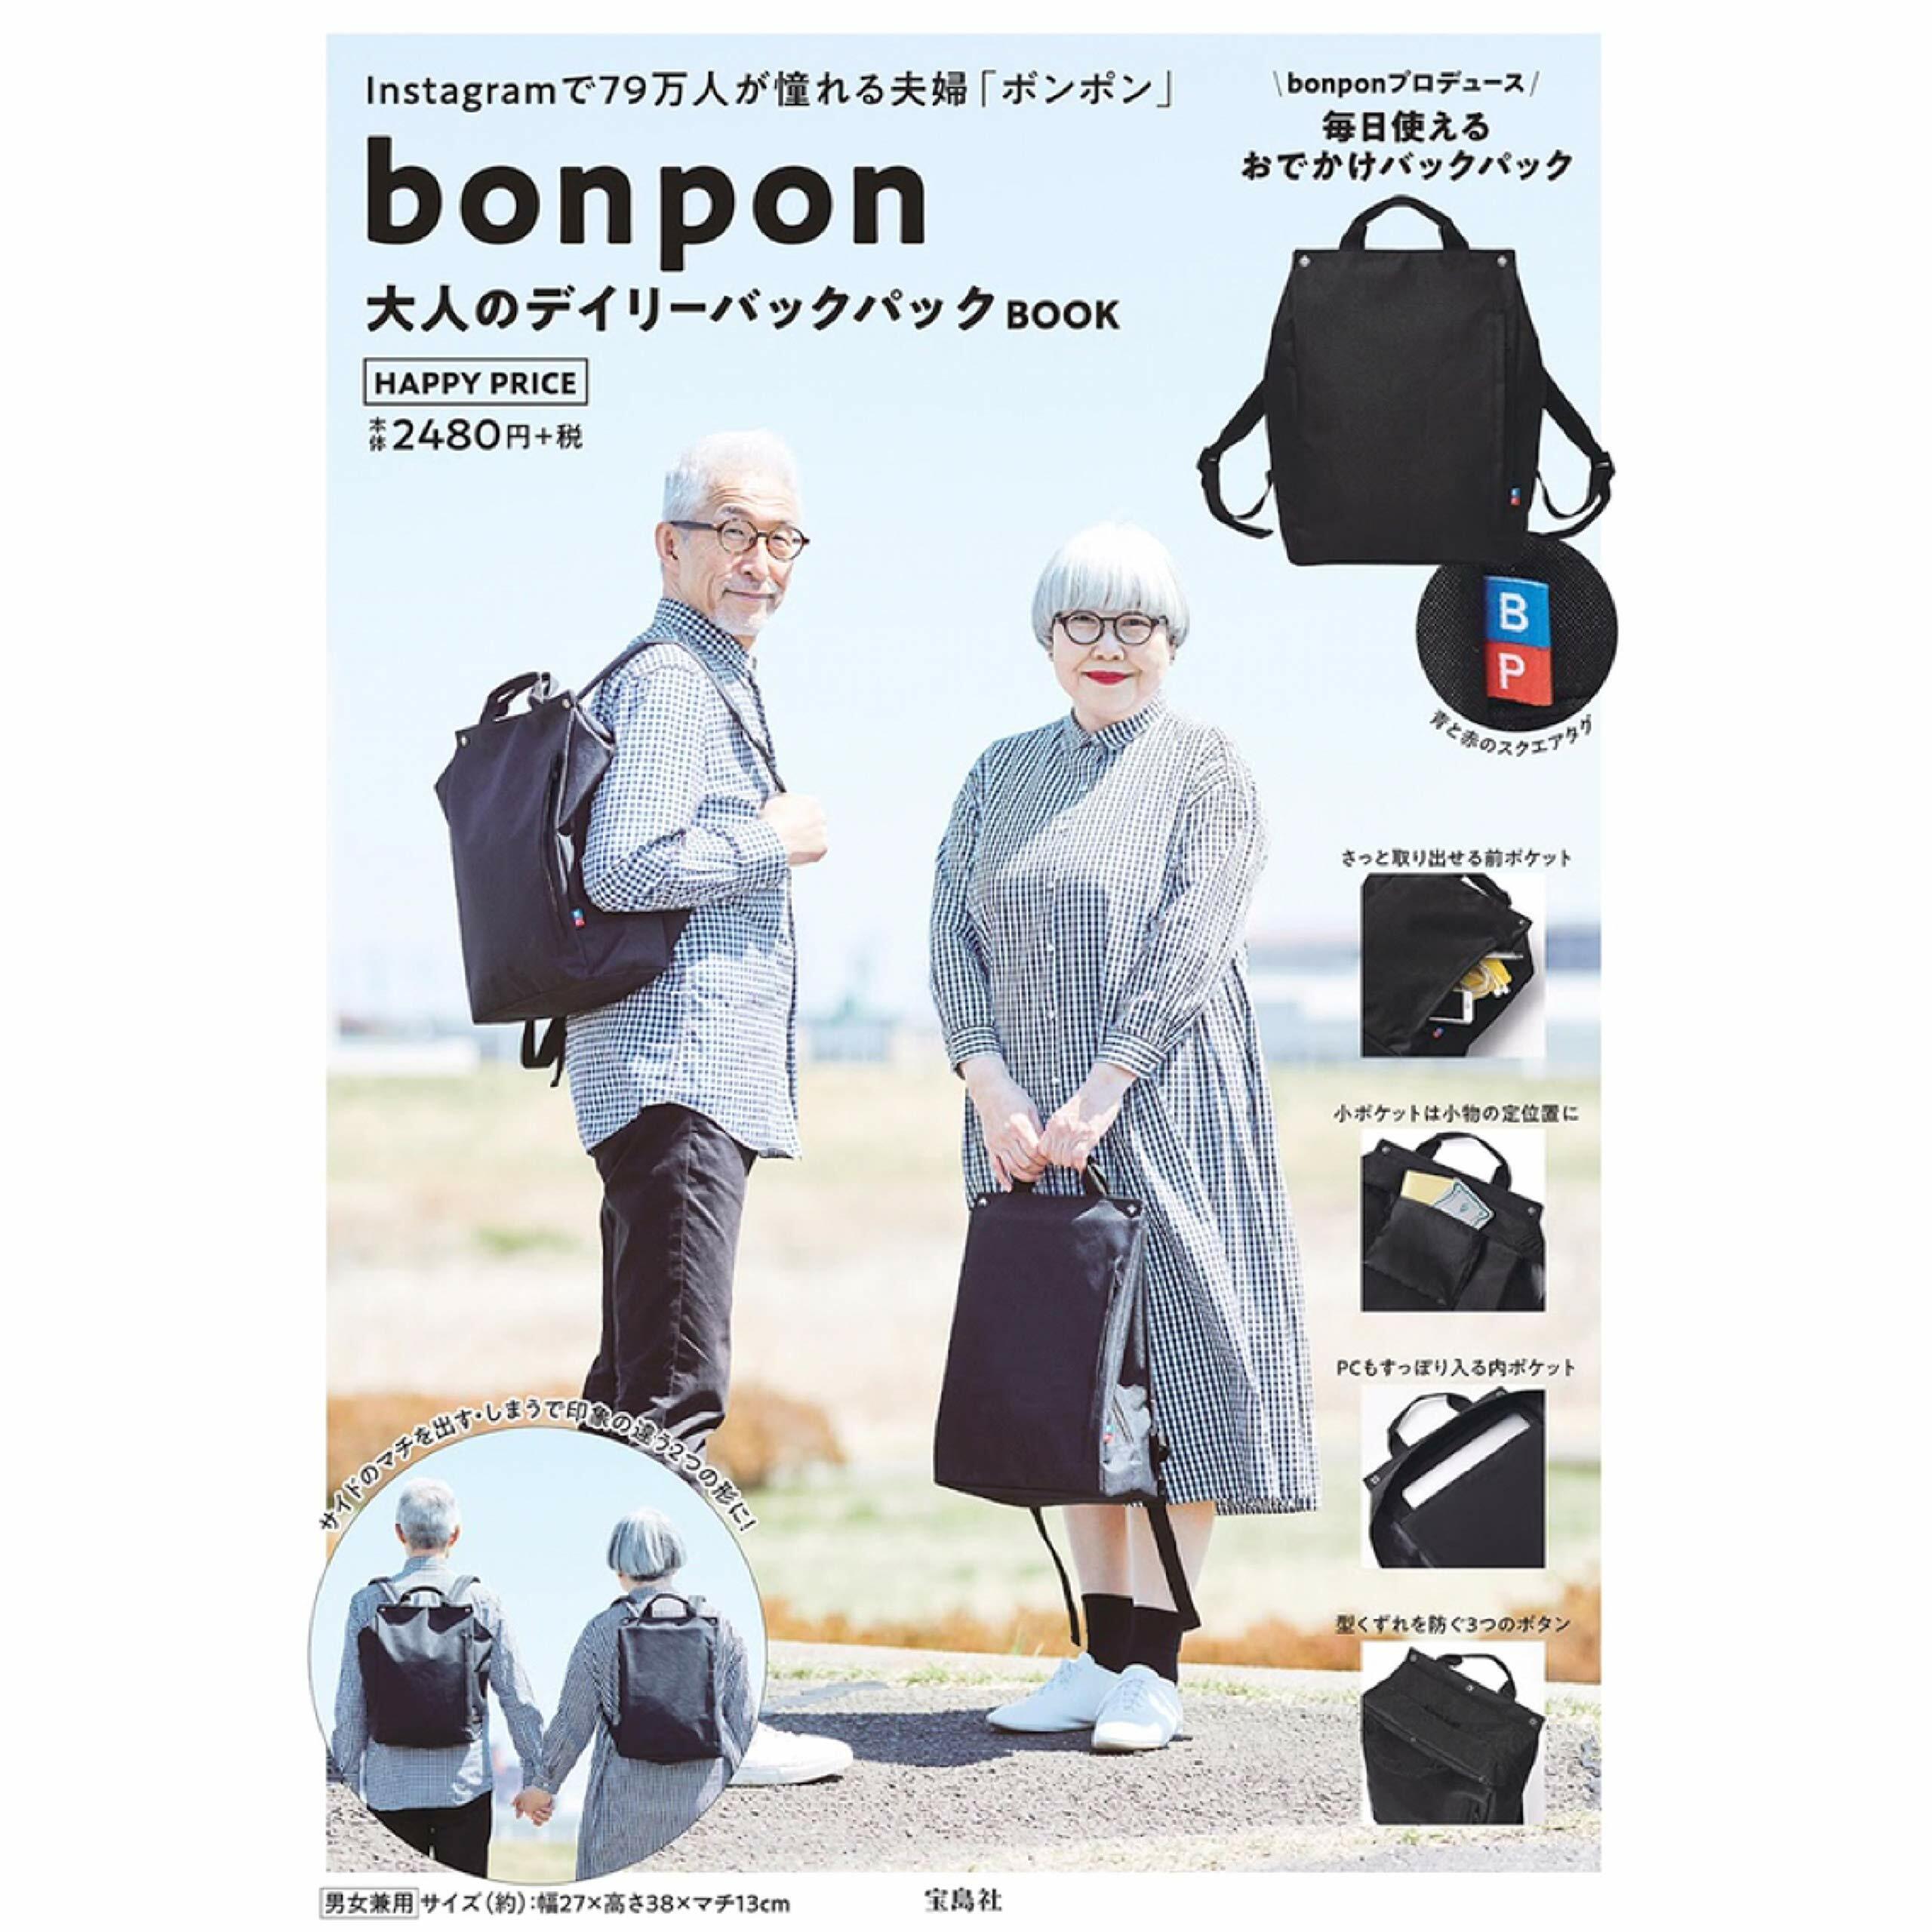 bonpon 大人のデイリ-バックパックBOOK (バラエティ)